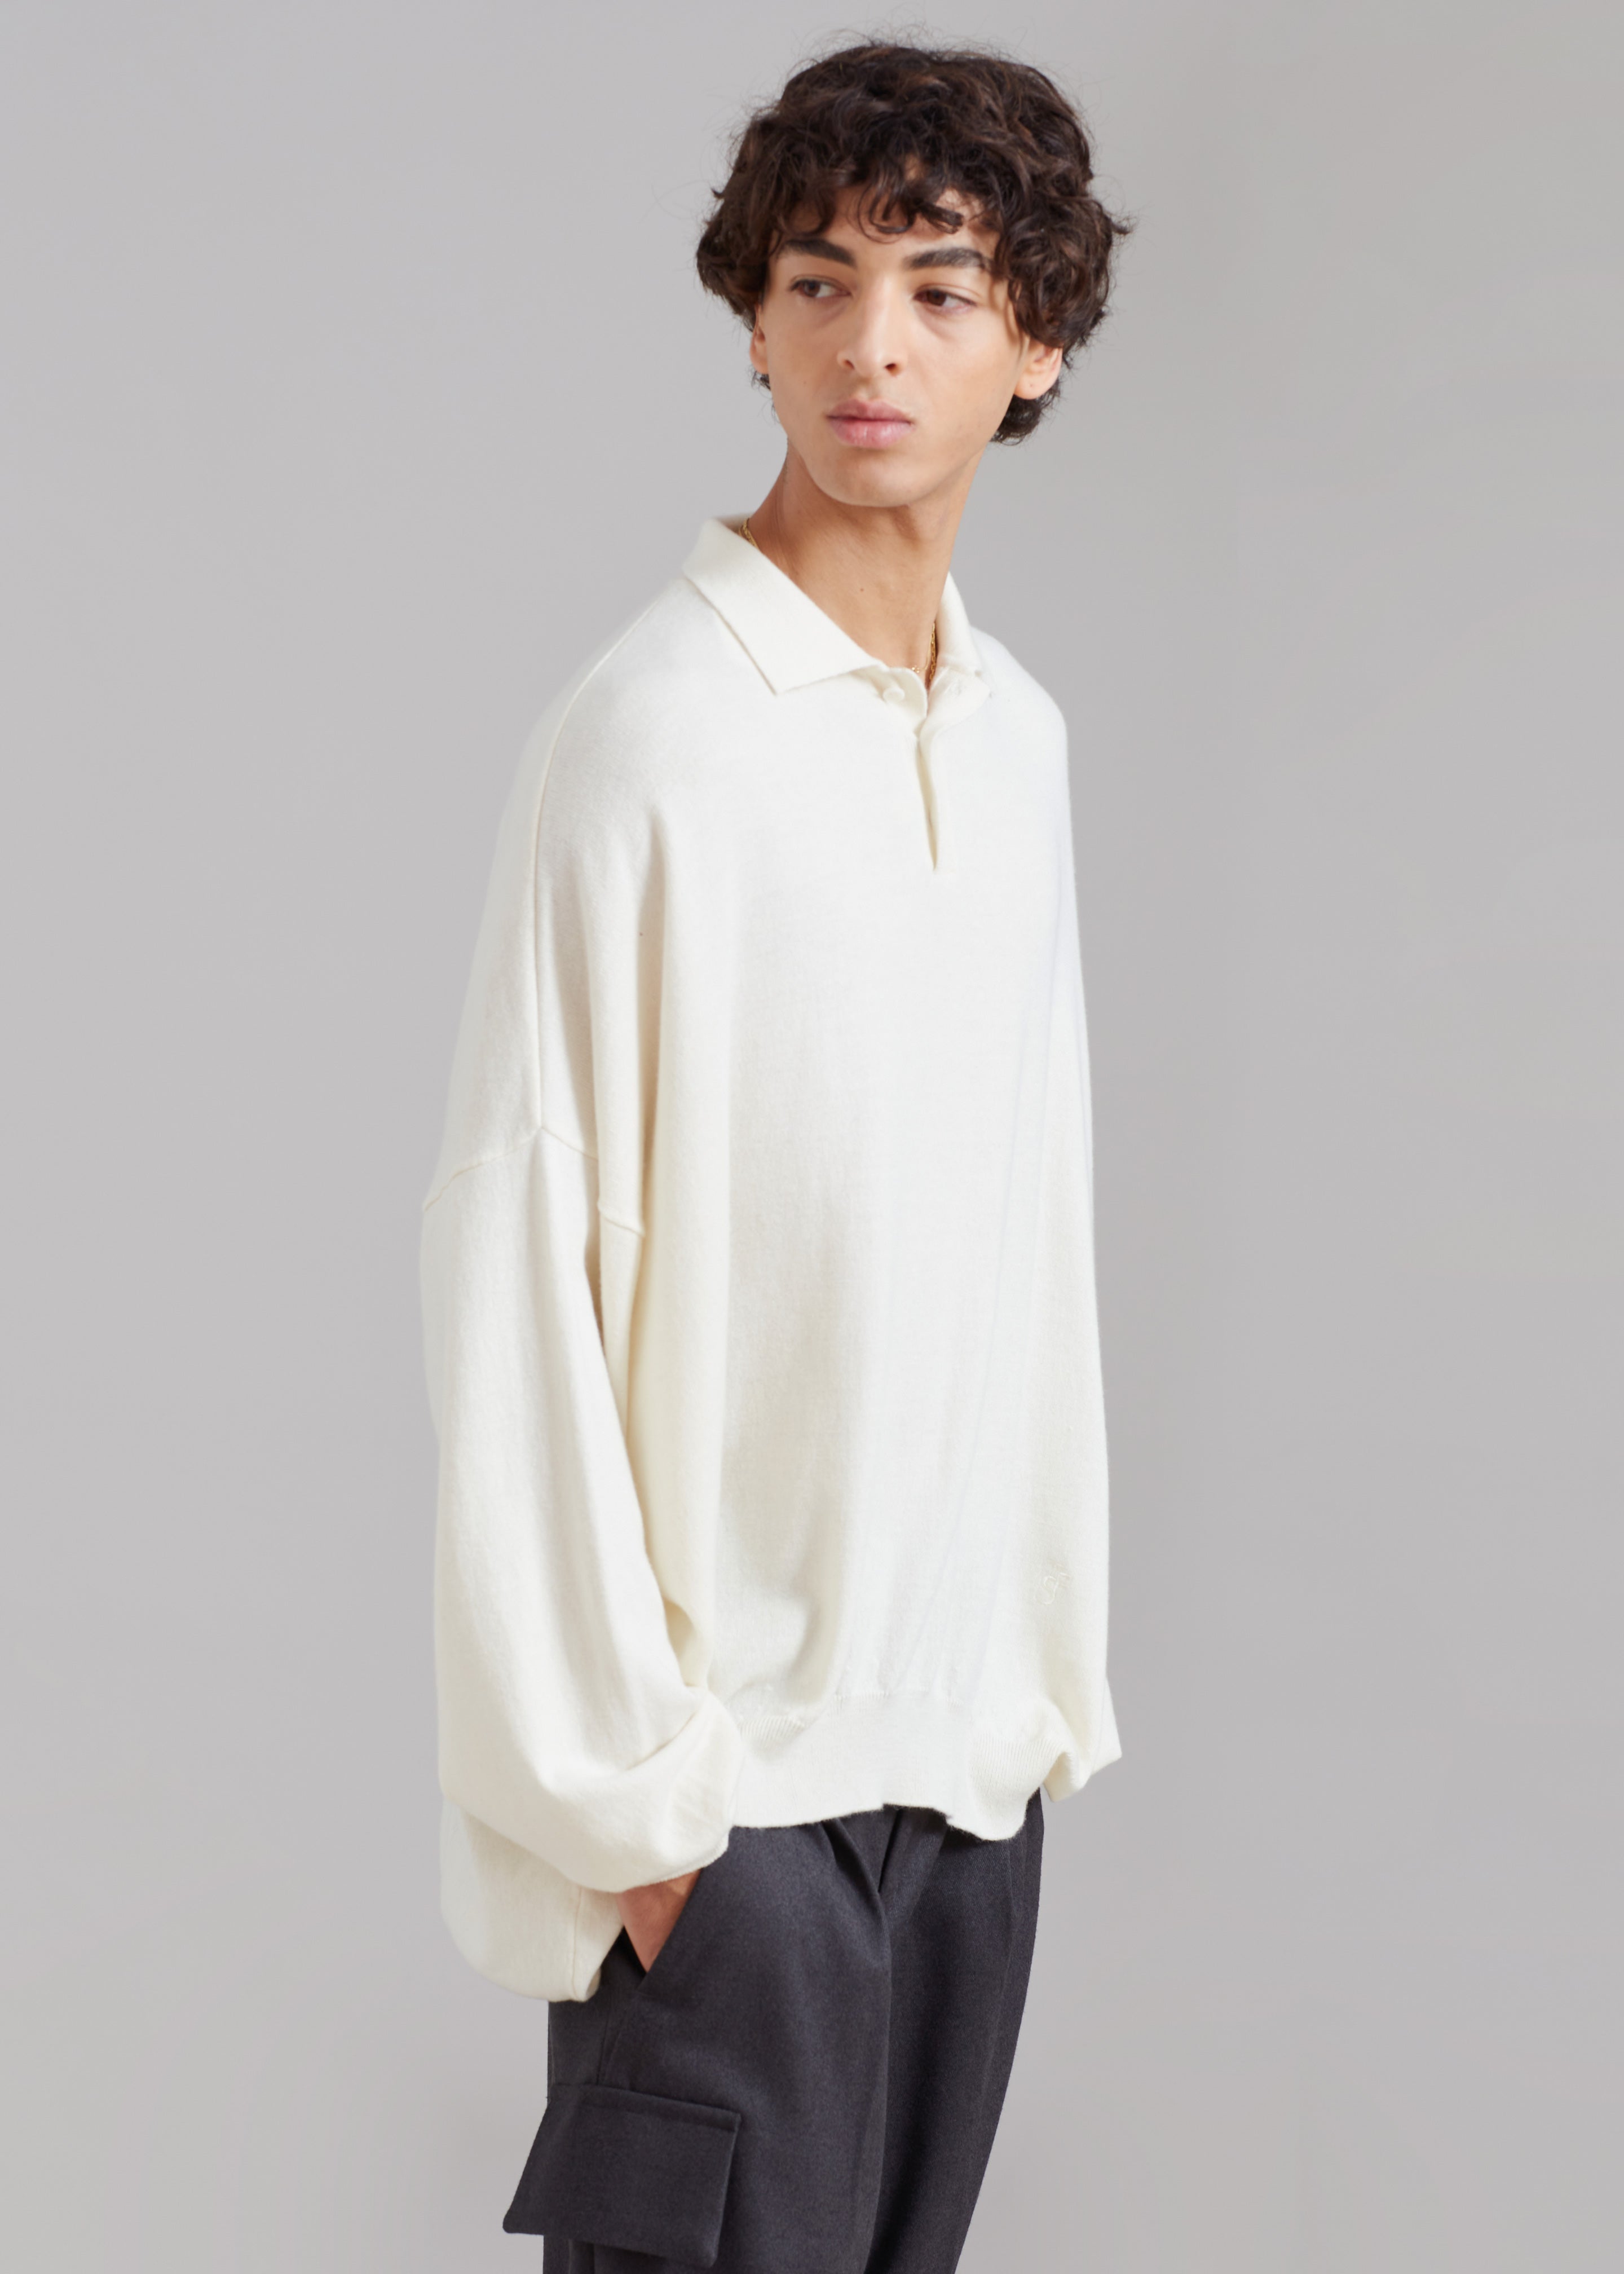 Meriel Polo Sweater - Cream - 10